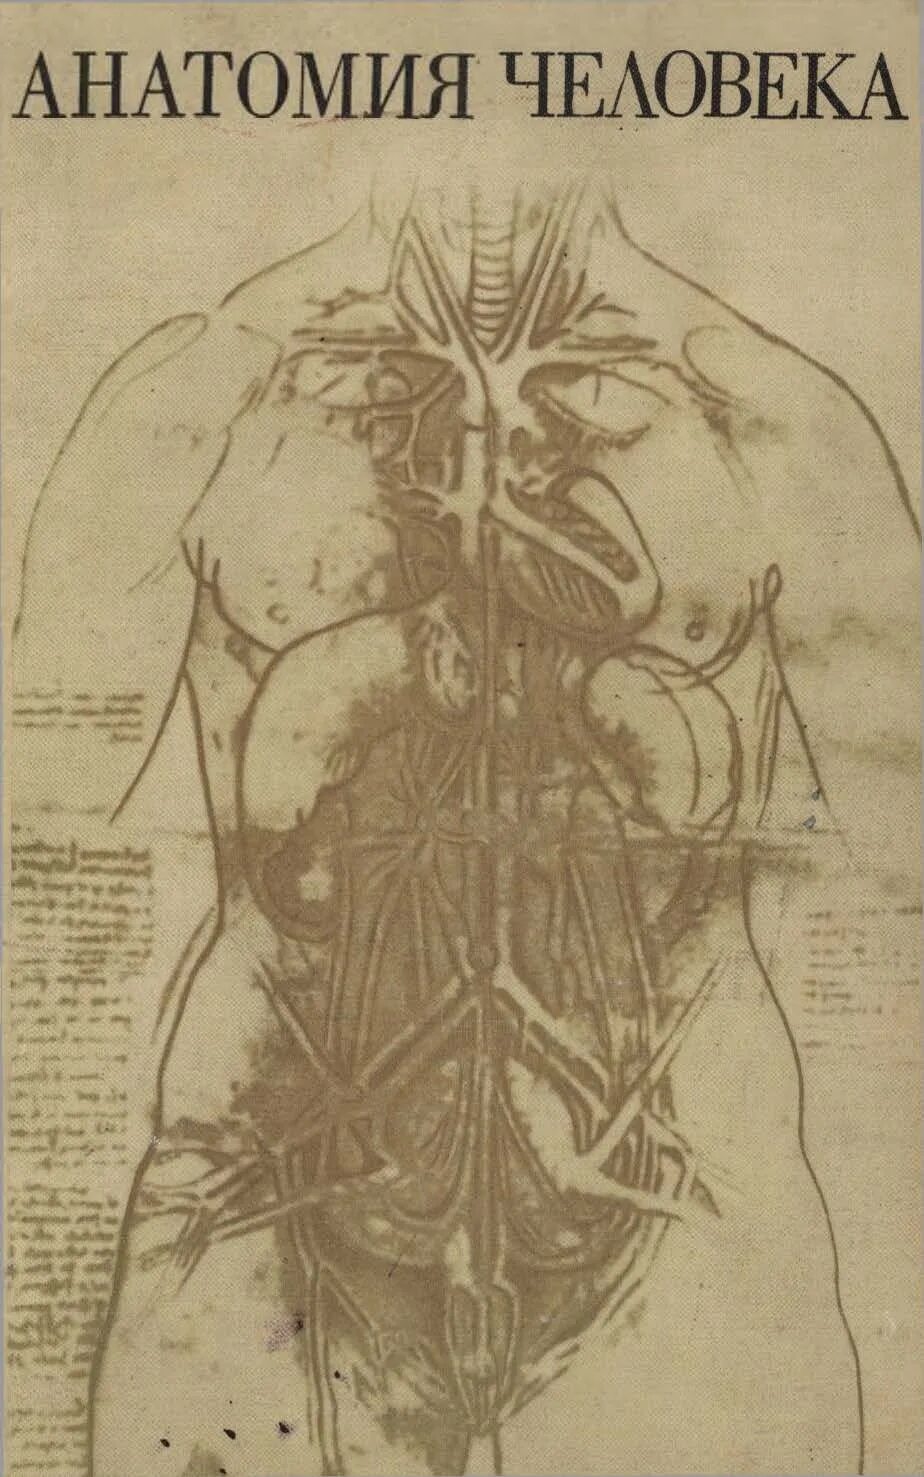 Анатомия человека пособия. Анатомия человека 5 издание Михайлов. Анатомия человека книга. Старая книга по анатомии. Старые учебники по анатомии.